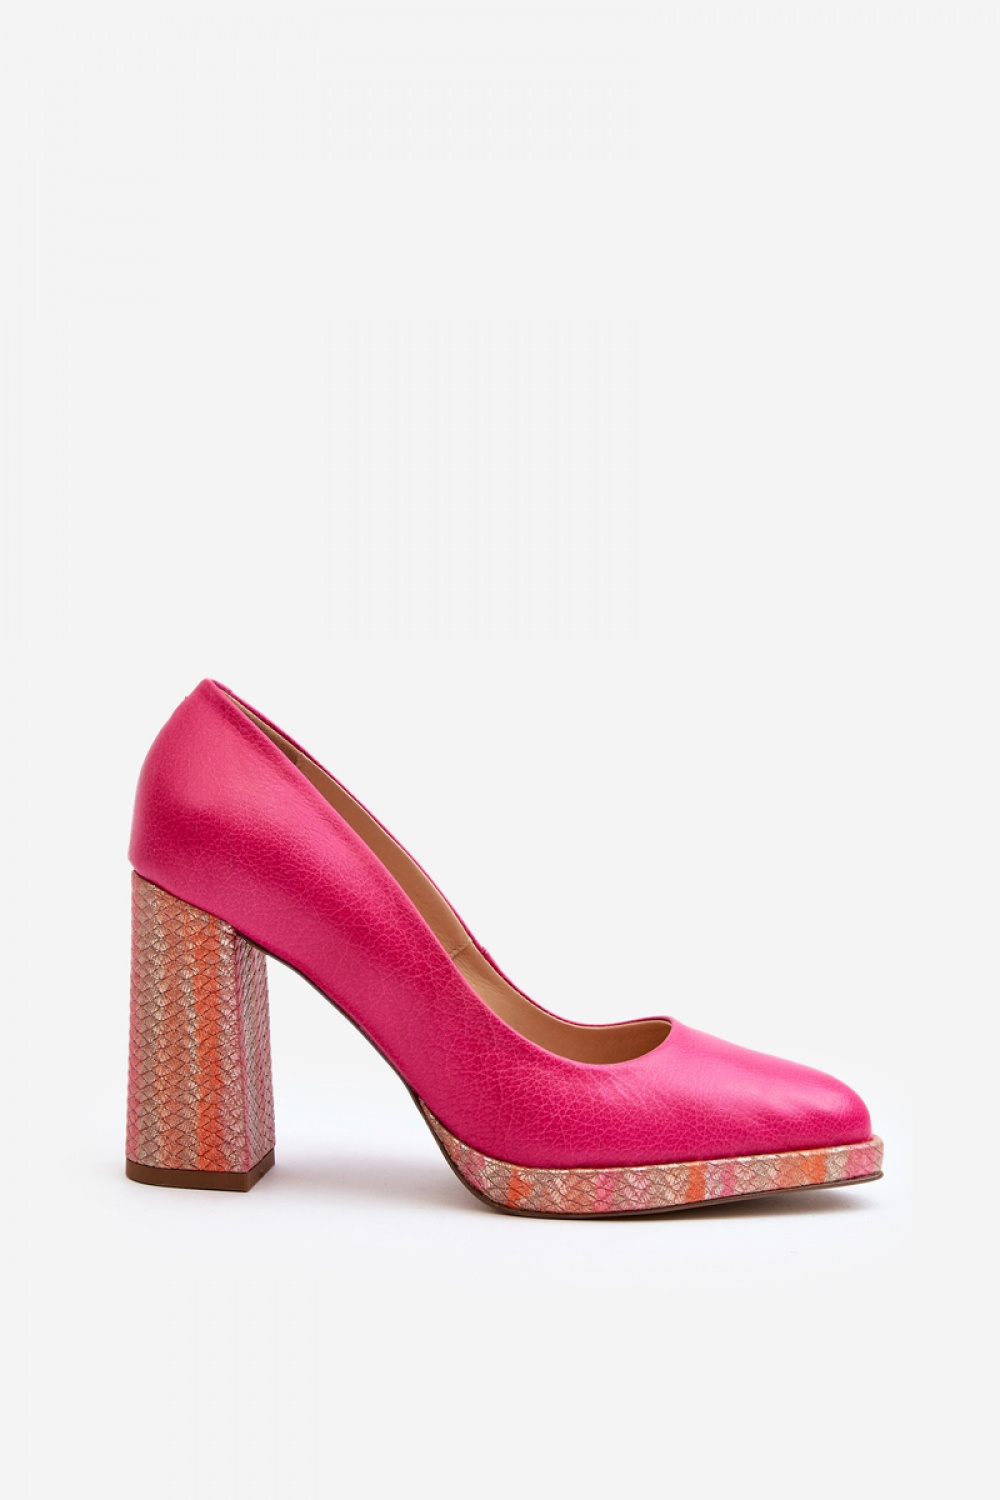  Block heel pumps model 192296 Step in style  pink